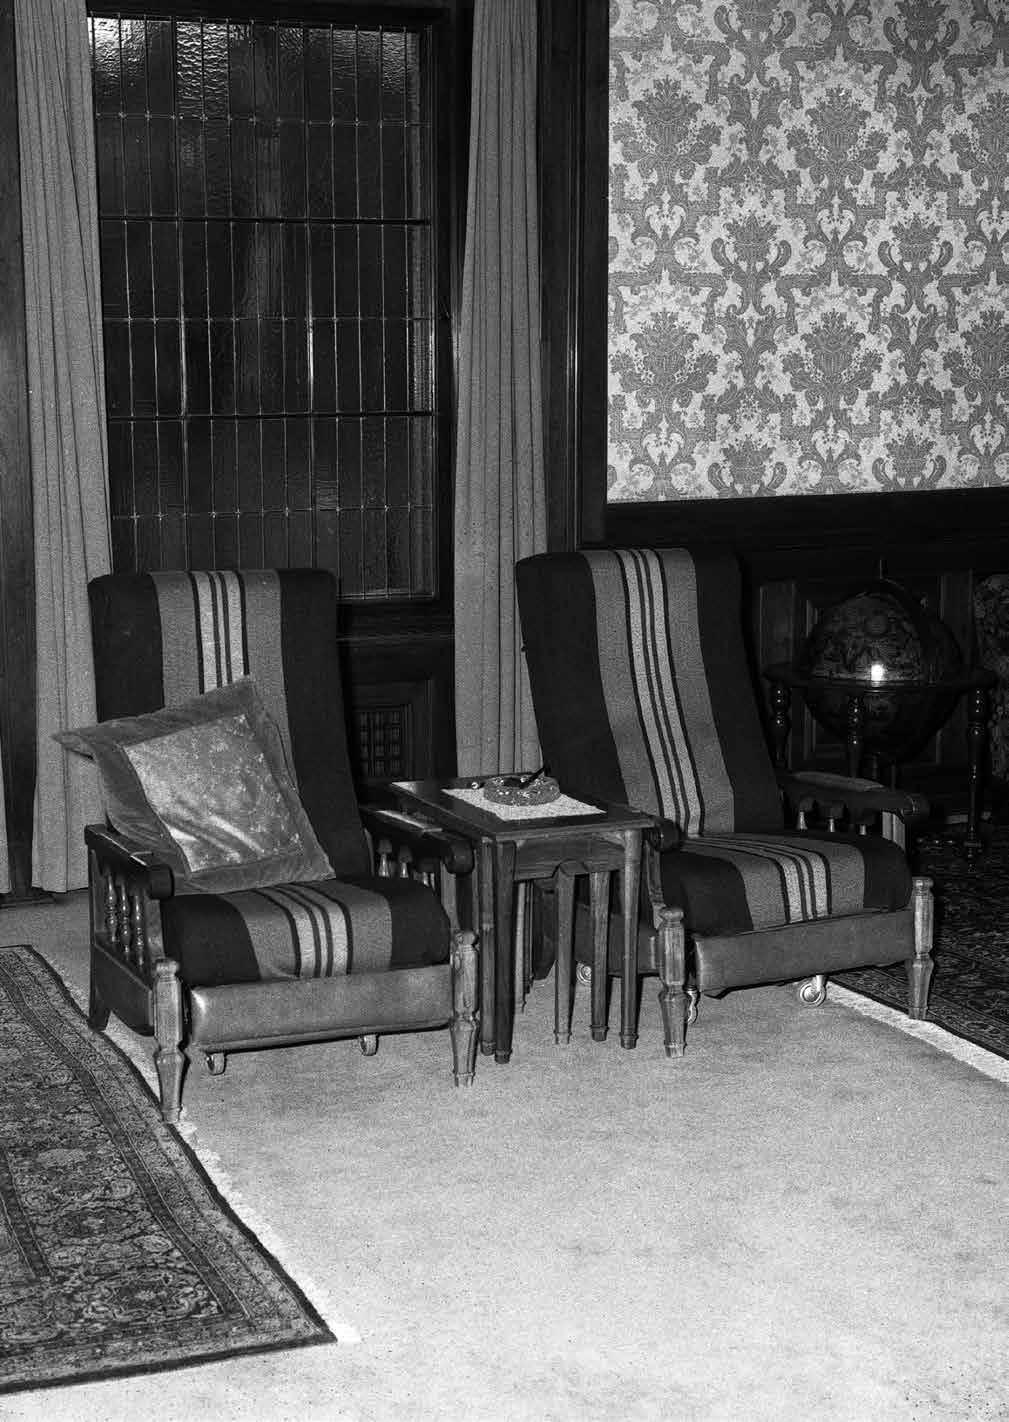 56 57 Tatomir Toroman Filmski program Ka nepoznatim svetovima Prostor u Rezidenciji u kome je Tito gledao filmove, Beograd 1980.